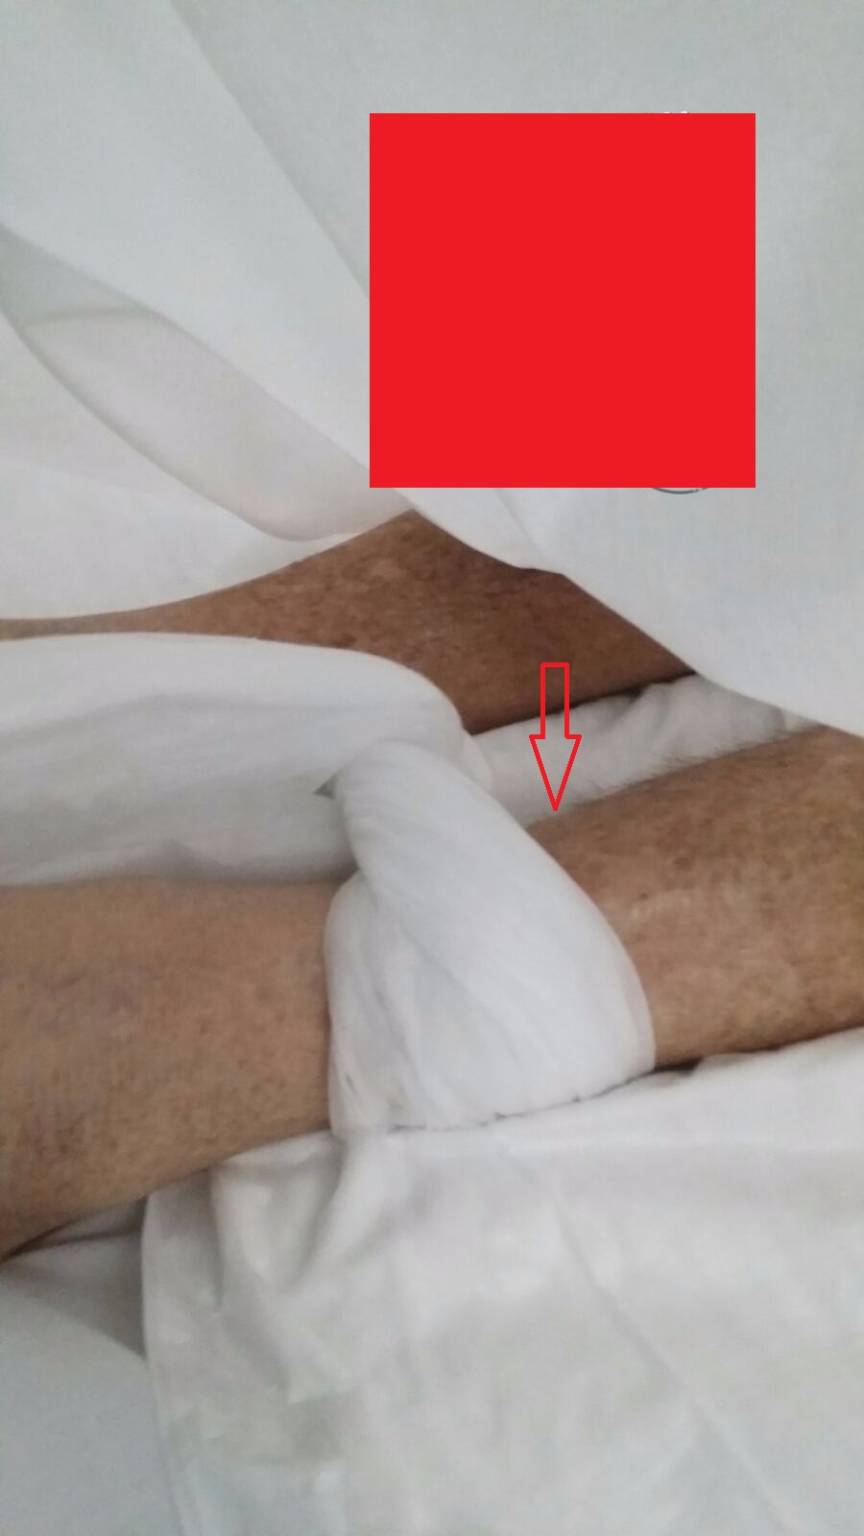 Paziente legato al letto per 14 giorni nell’ospedale di Potenza